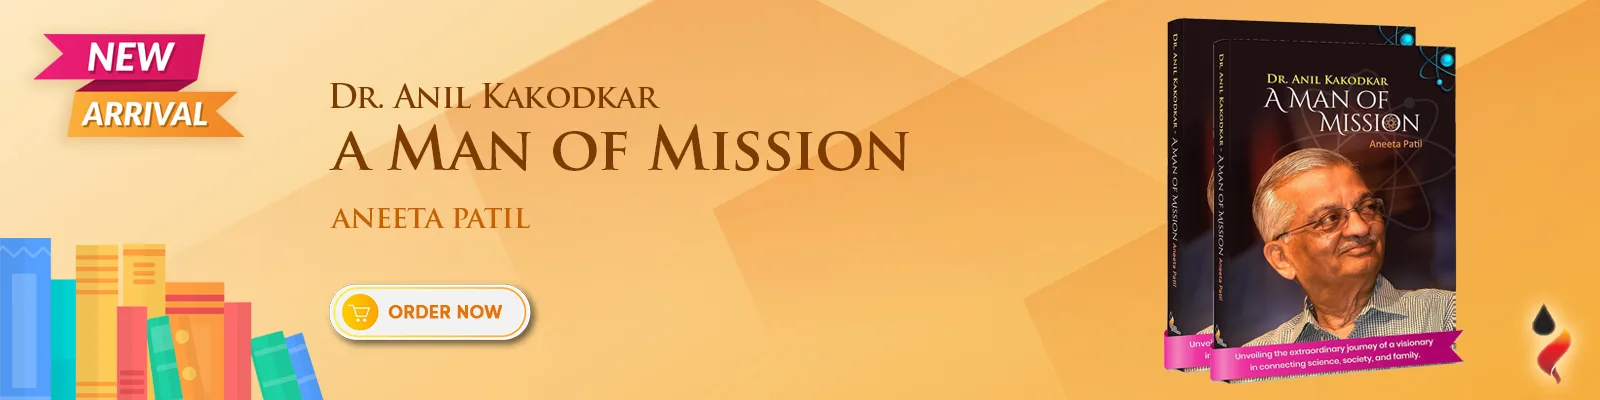 Dr. Anil Kakodkar - A Man of Mission